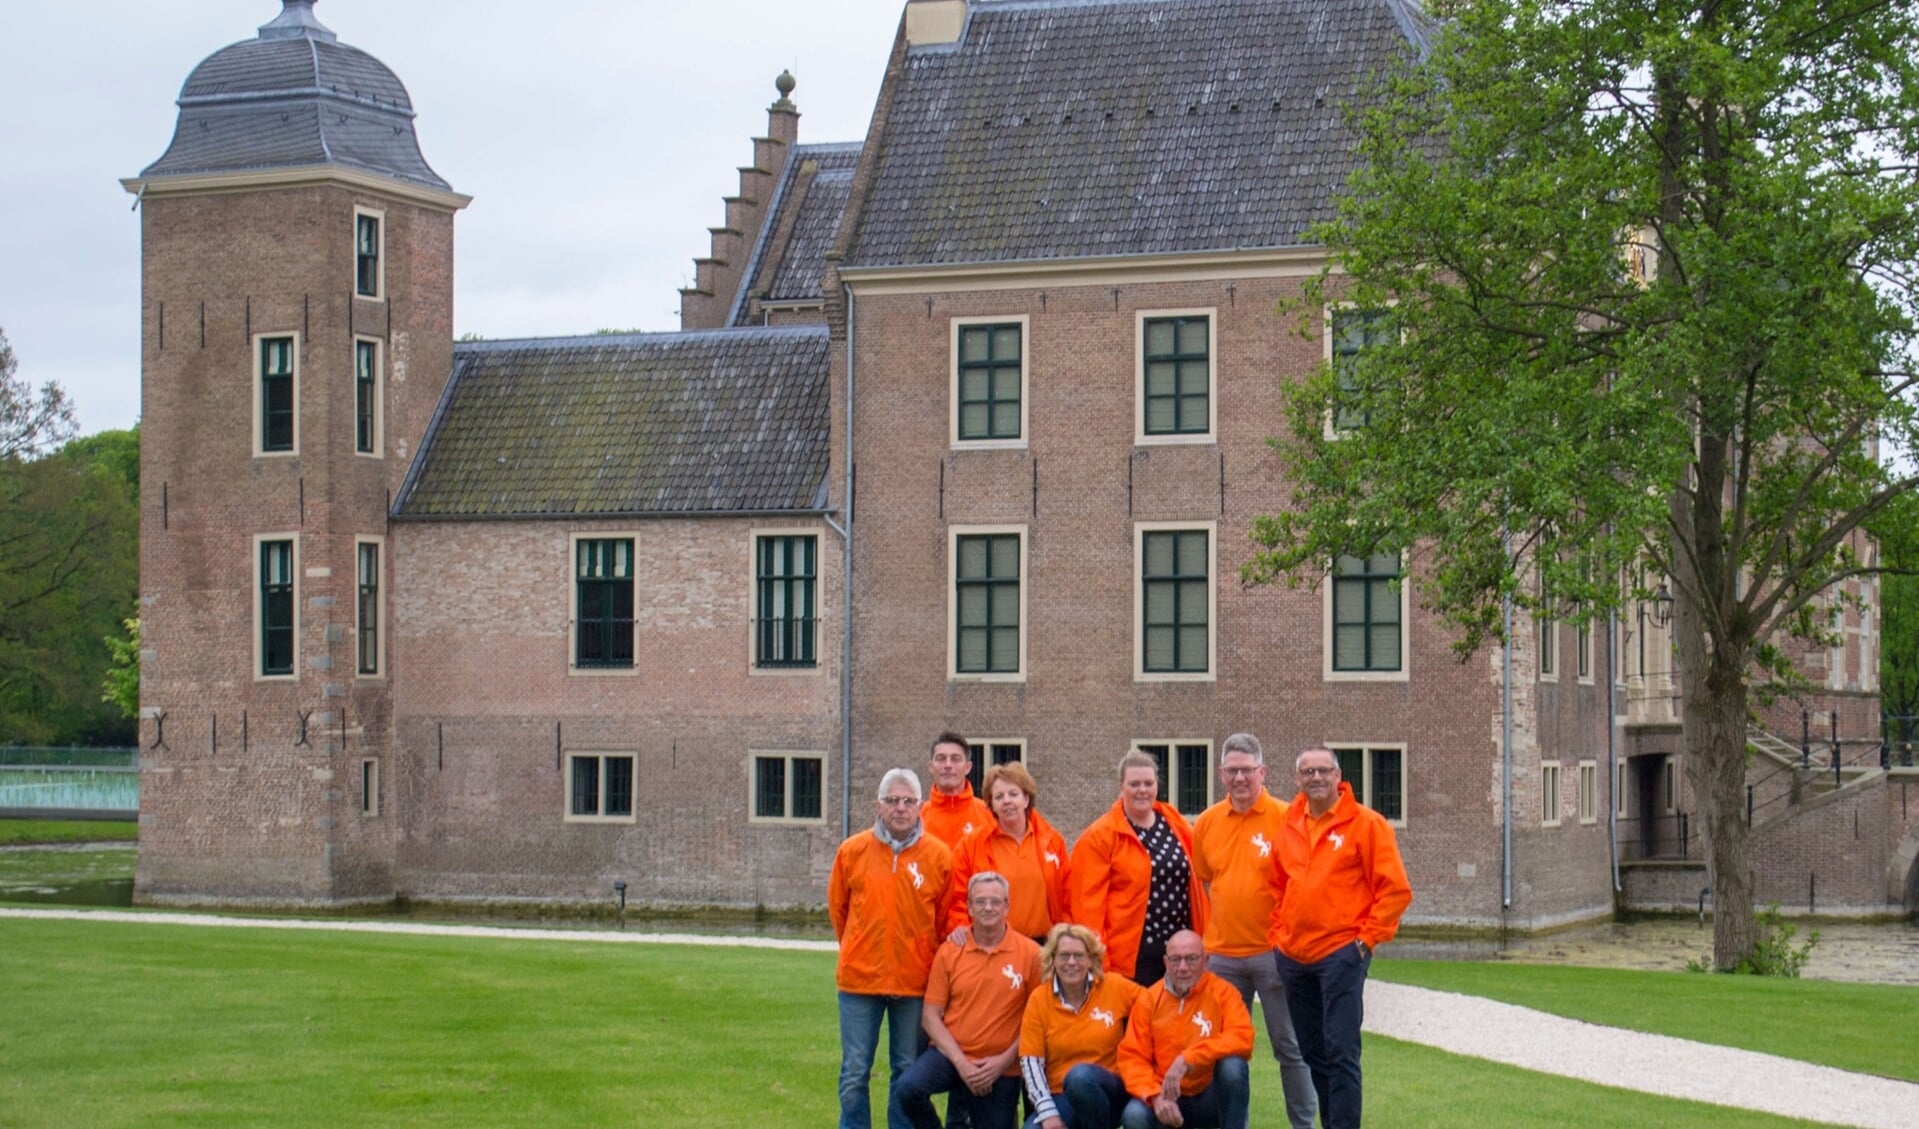 Het bestuur van Oranjevereniging Ruurlo (foto) beslist eind juni in samenspraak met Stichting De Weide en Stichting Kermis Ruurlo over de Septemberfeesten 2020. Foto: PR.